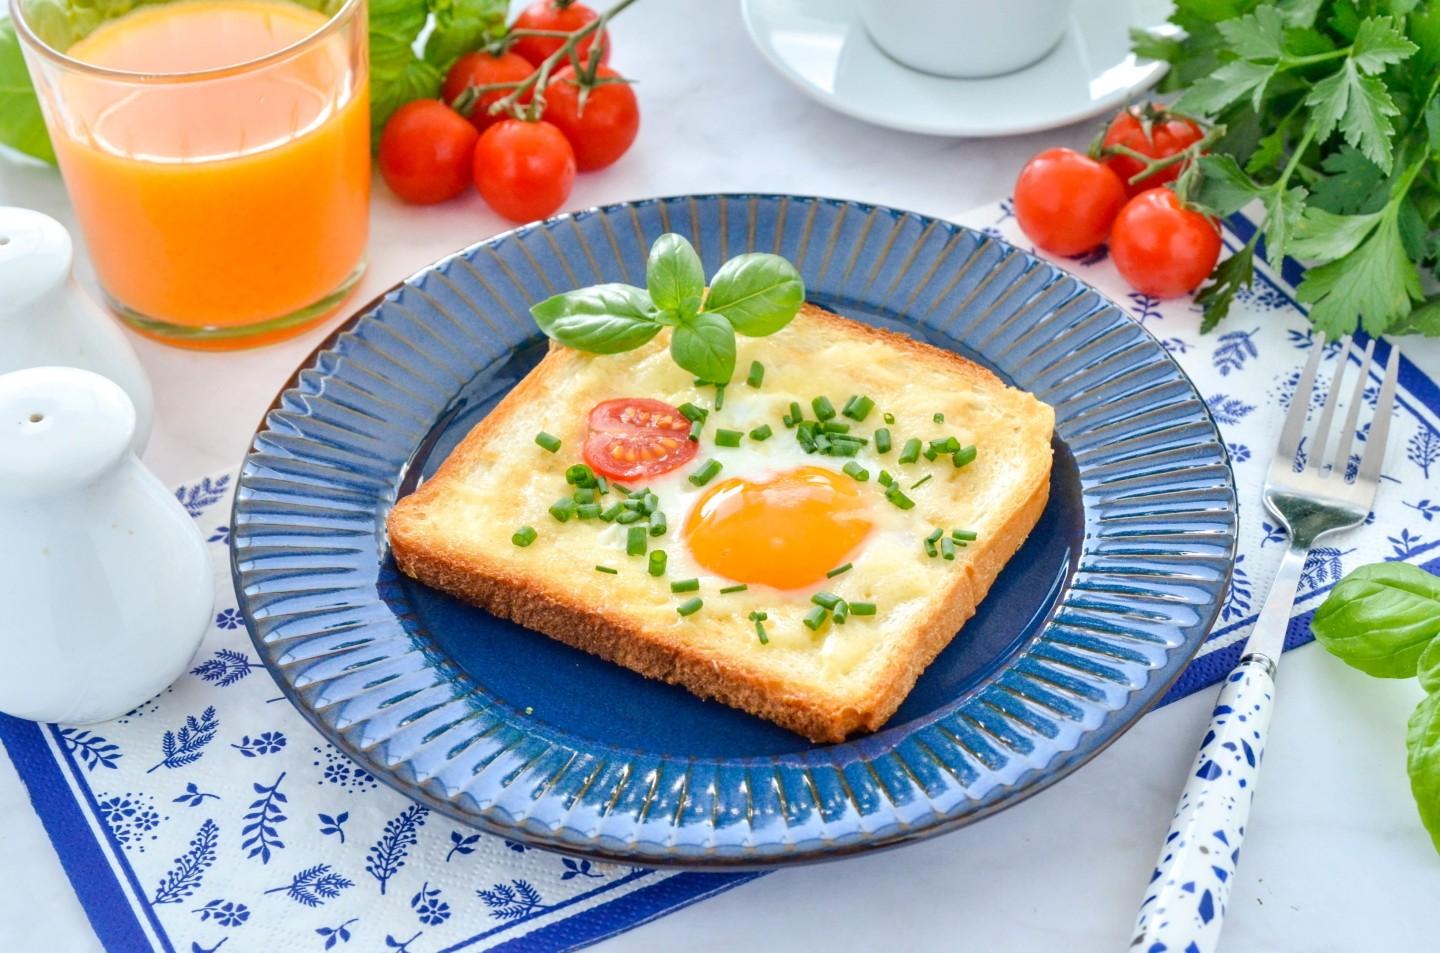 Рецепт приготовления бутерброда с яйцом и маслом - просто и быстро